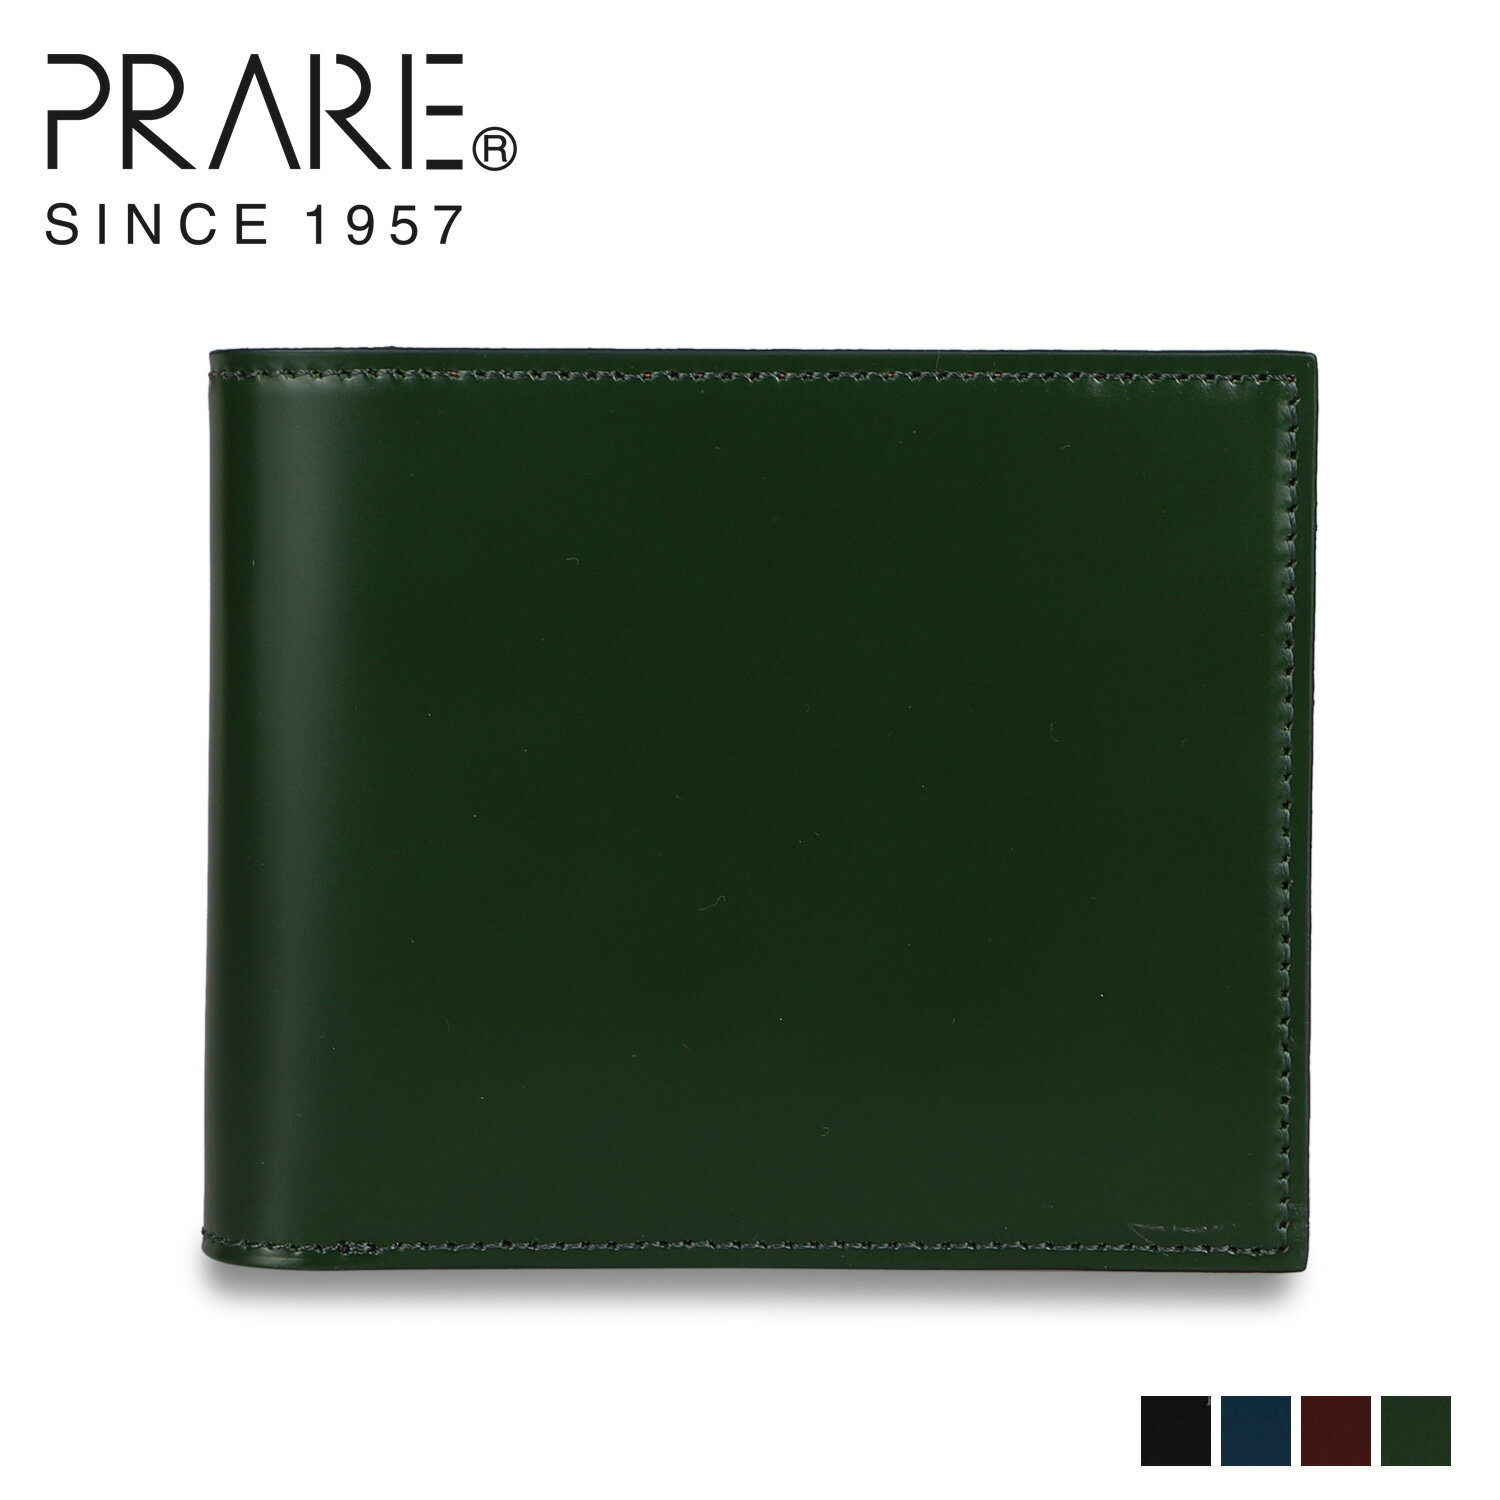 コードバン 財布（メンズ） プレリー PRAIRIE 二つ折り財布 メンズ 本革 コードバン CORDOVAN1957 ブラック ネイビー ダーク ブラウン グリーン 黒 NP12223